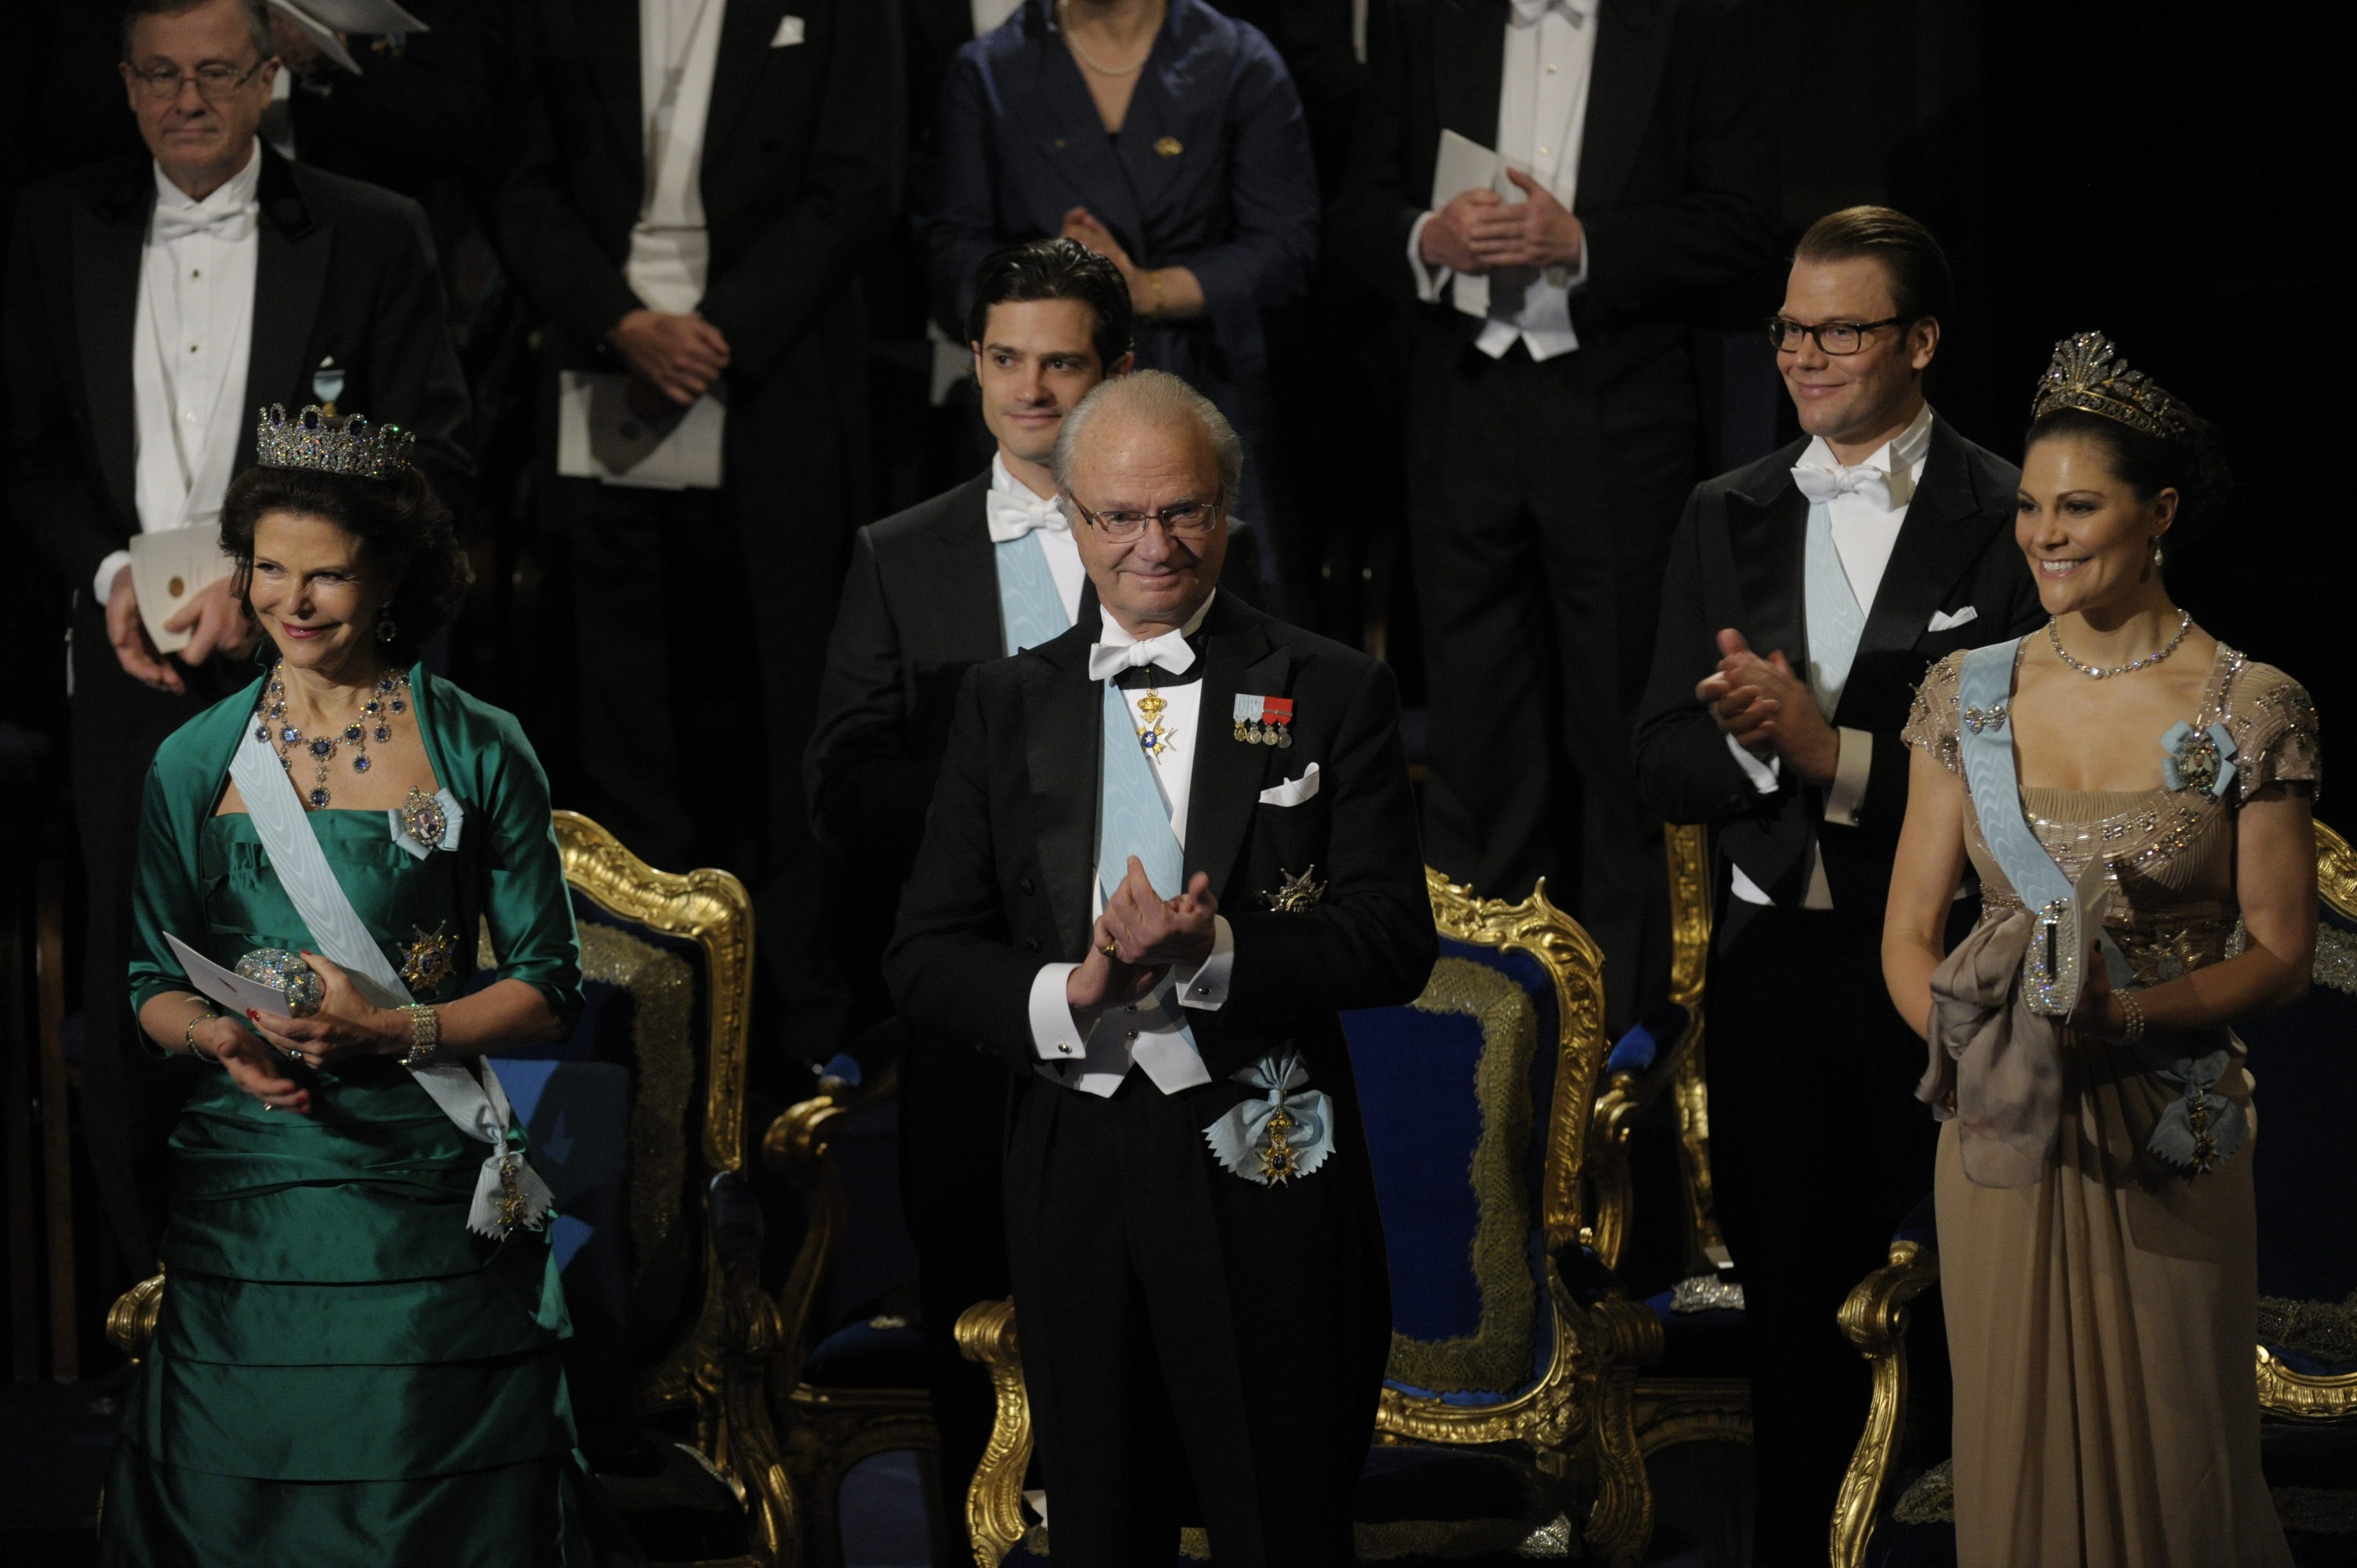 Jultal, Drottning Silvia, Kungligt, Kung Carl XVI Gustaf